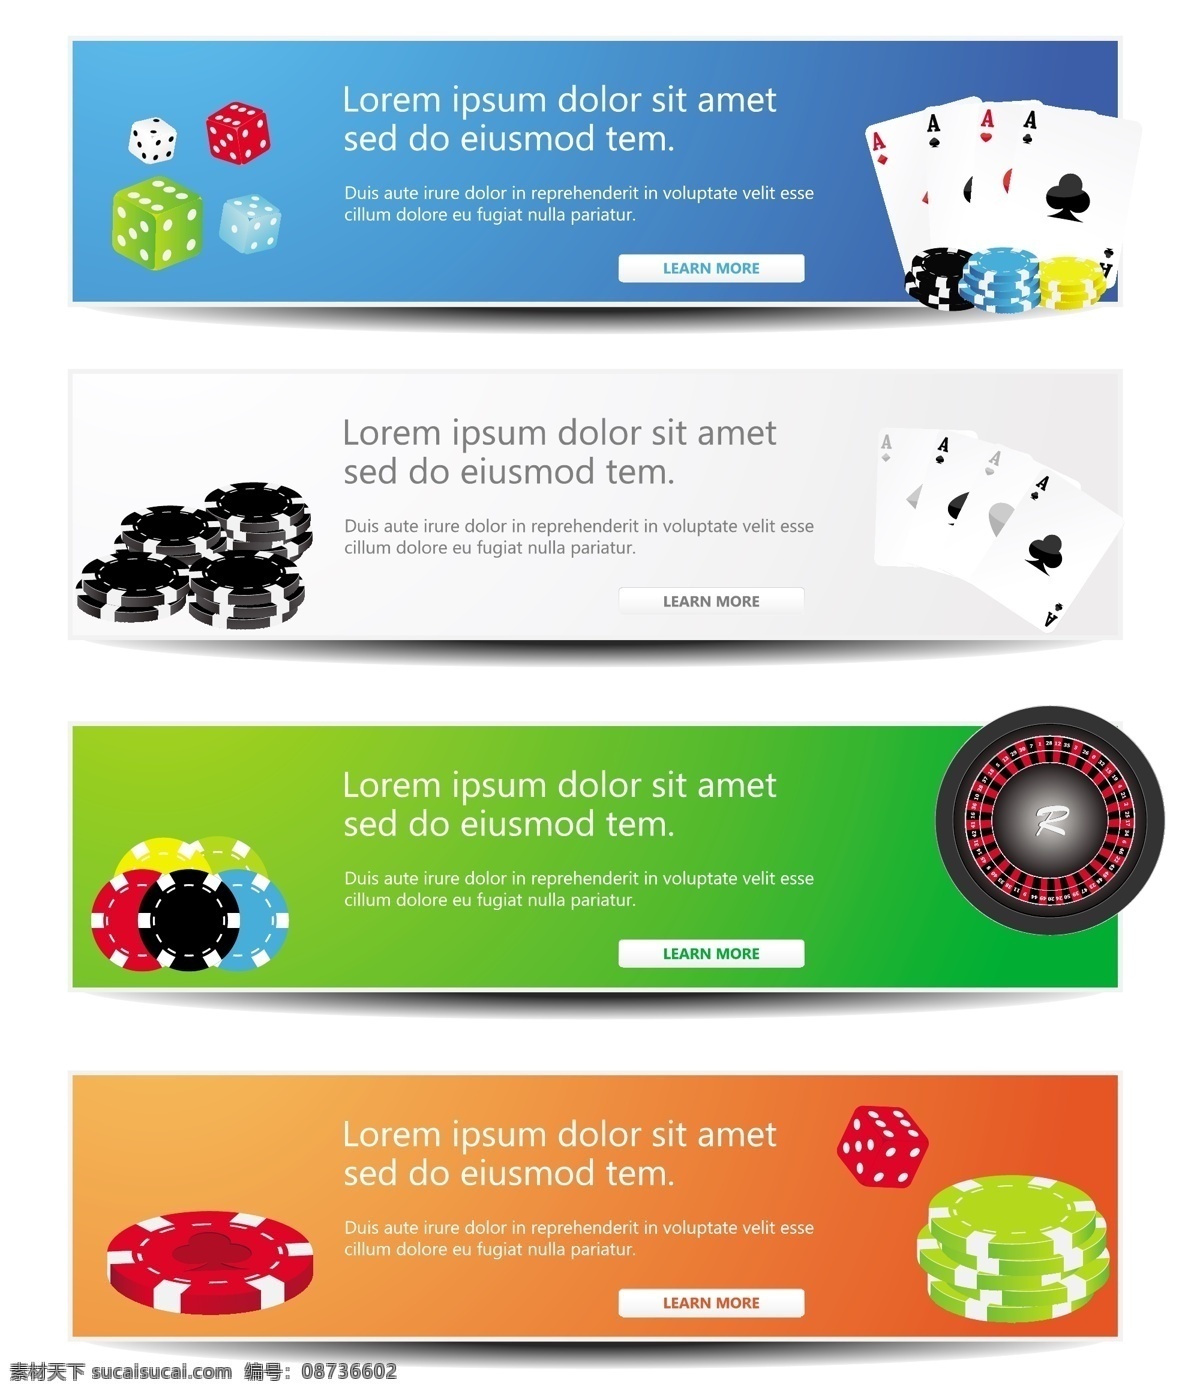 游戏 ui 设置 矢量 旗帜 标题 赌博 横幅 卡 免费 掷骰子 扑克筹码 丰富多彩的 用户界面元素 矢量图